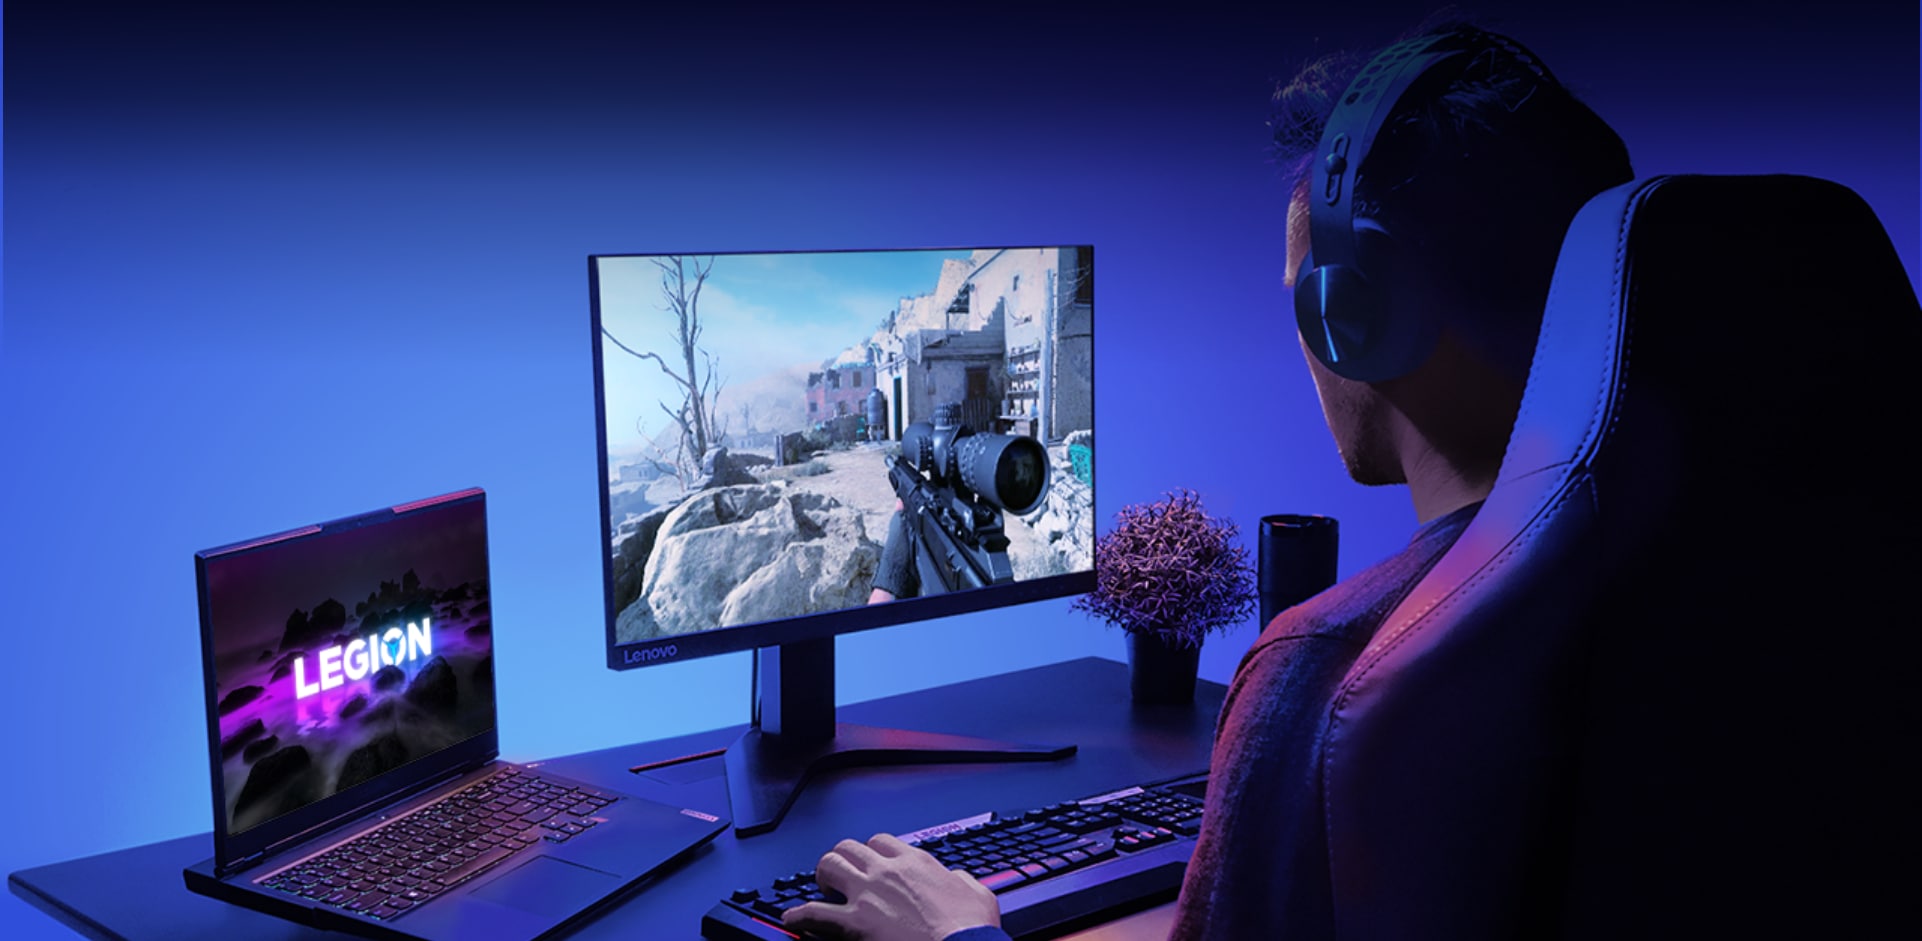 Геймер в наушниках играет в компьютерную игру, изображение которой видно на мониторе, сбоку расположен ноутбук